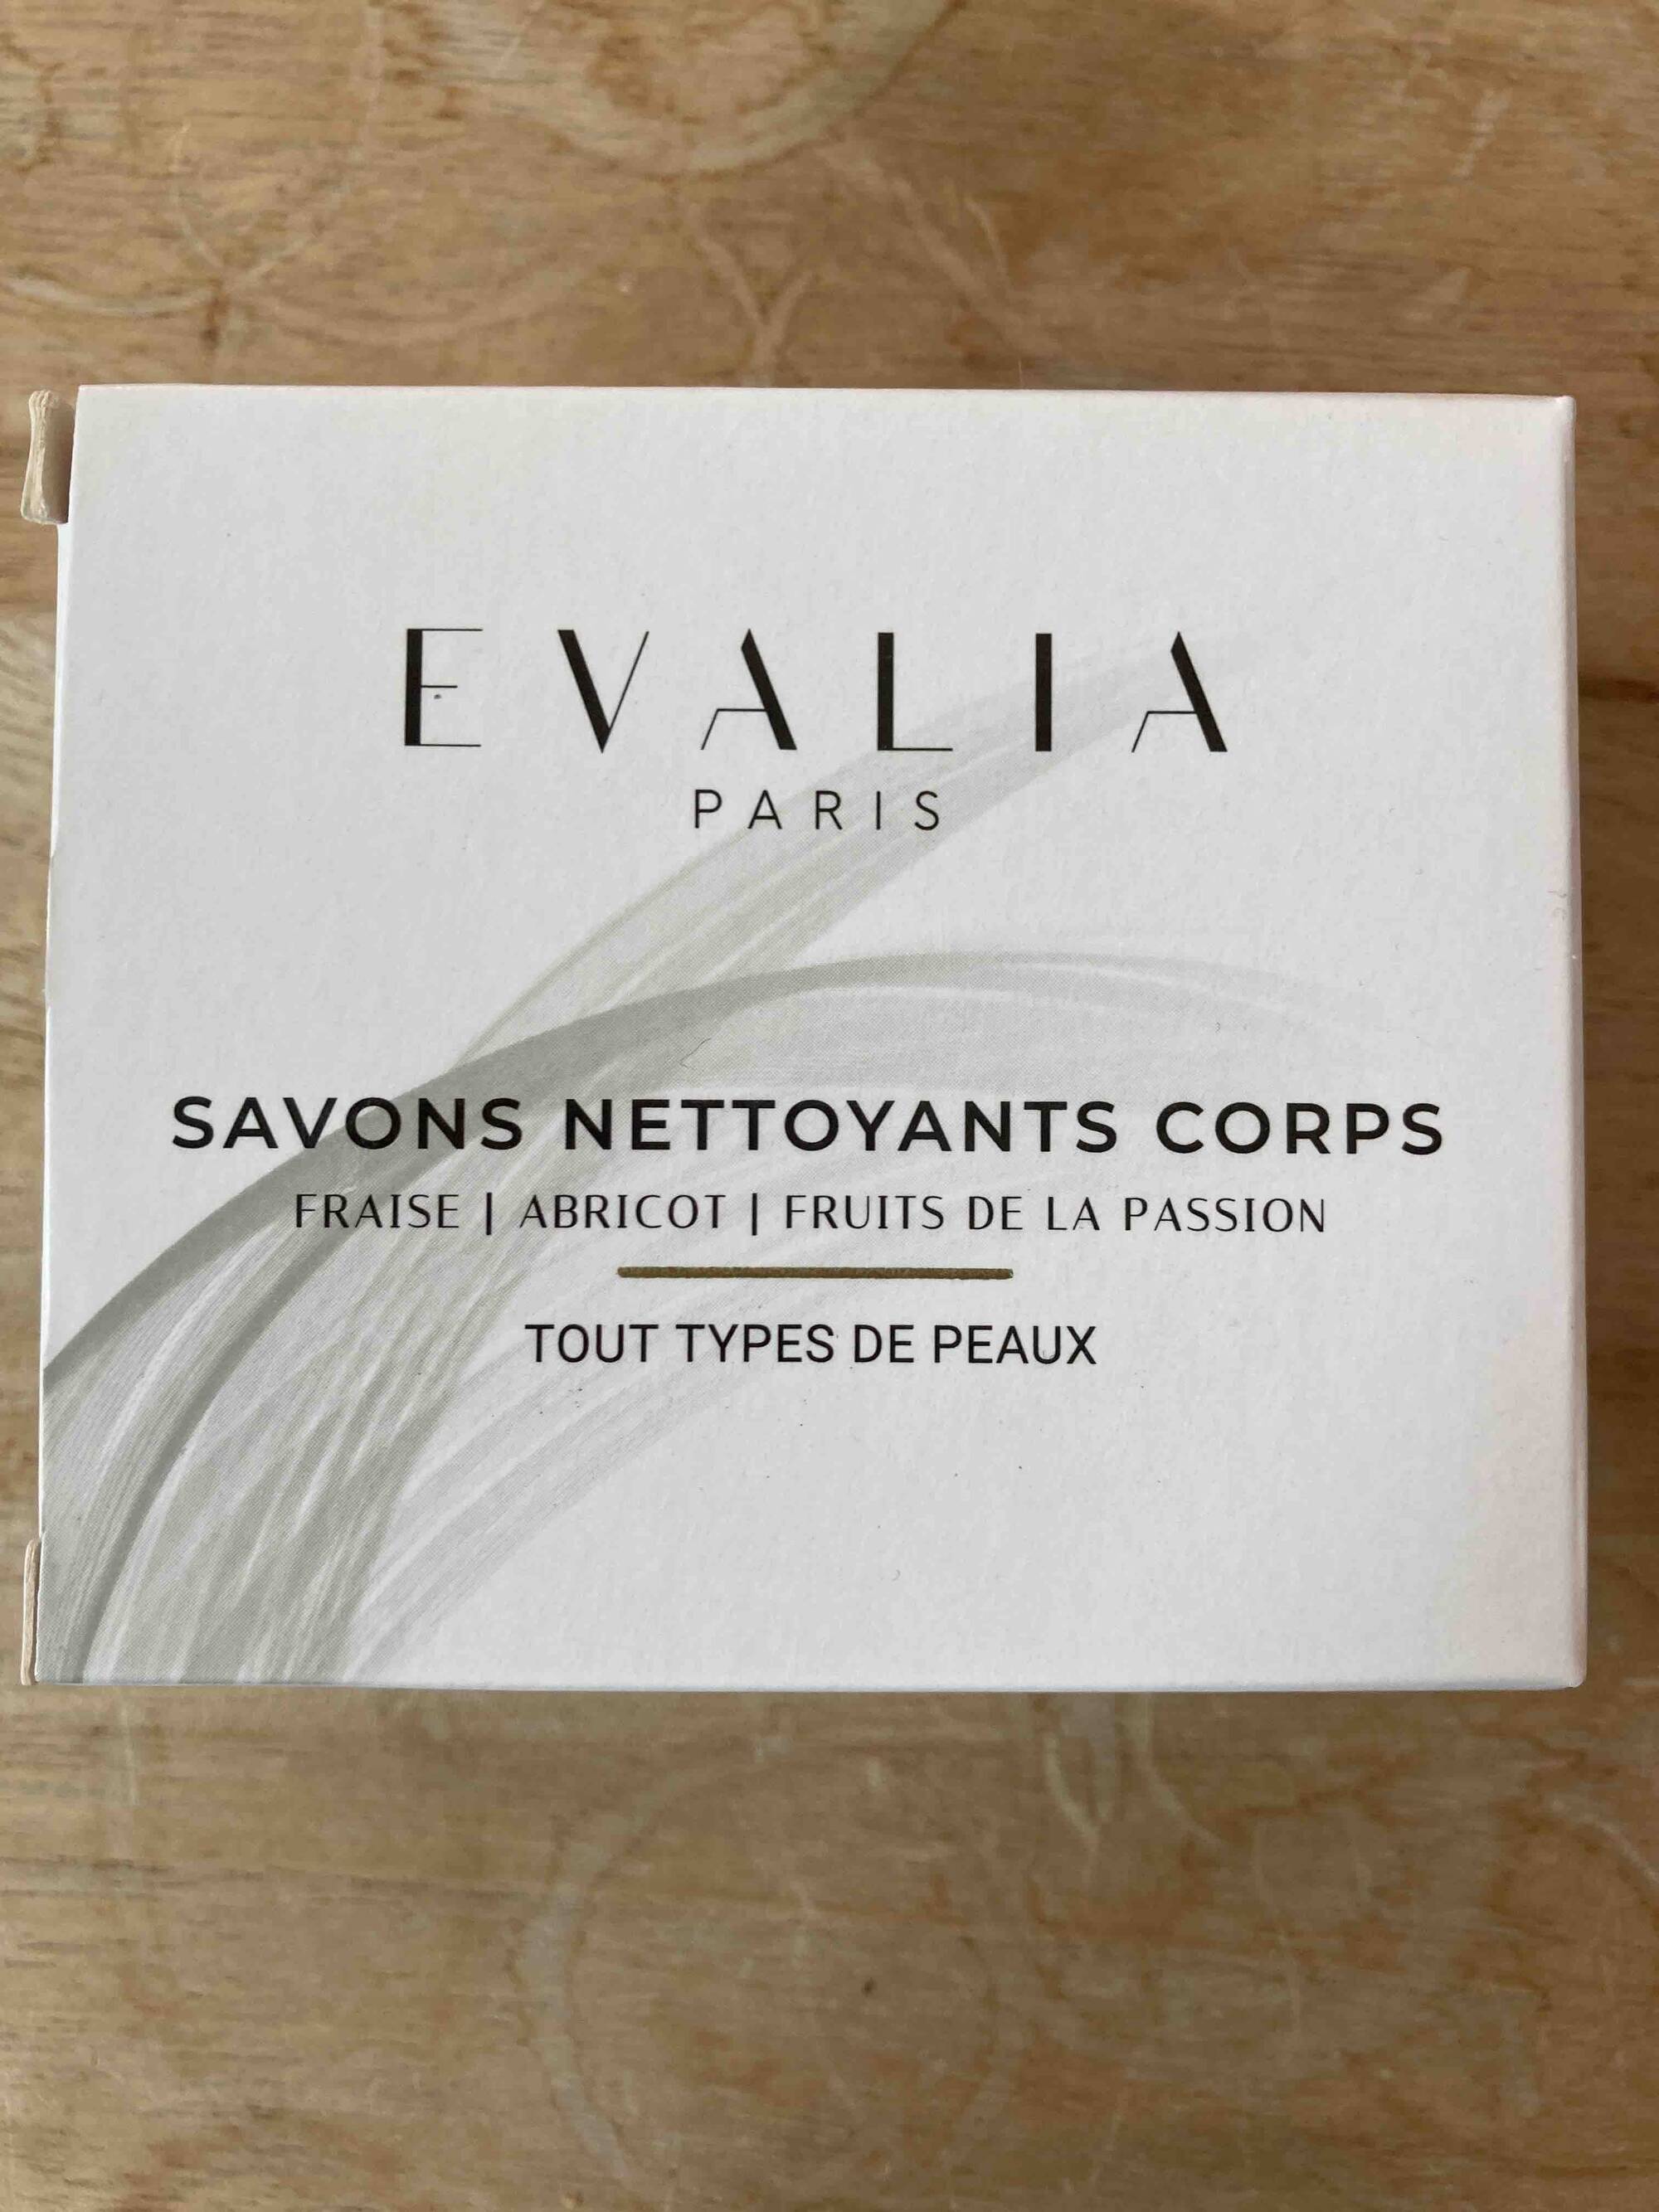 EVALIA PARIS - Fraise abricot fruits de la passion - Savons nettoyants corps